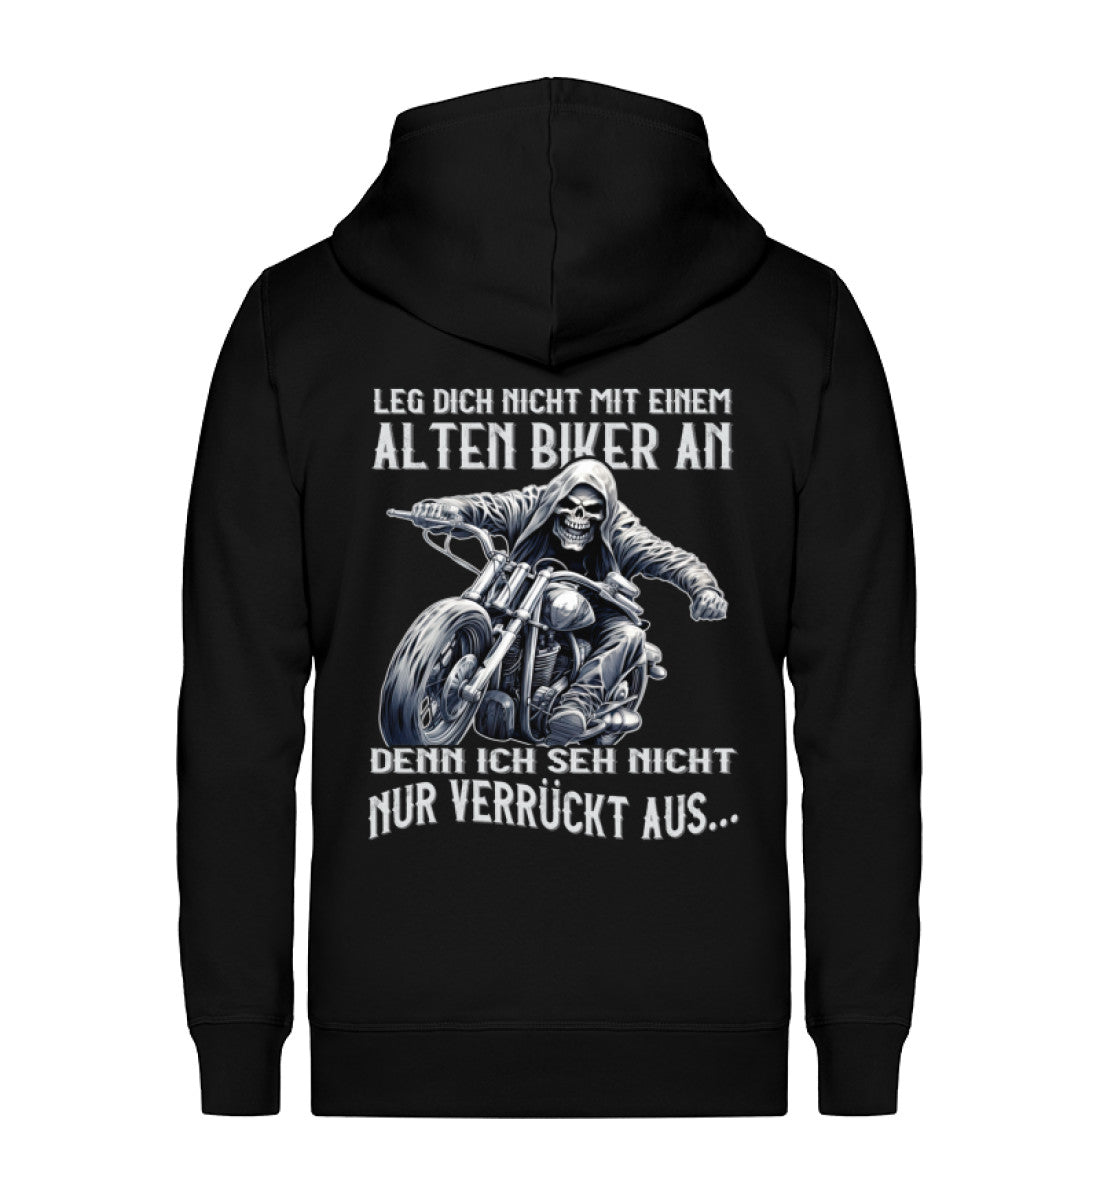 Eine Reißverschluss-Jacke für Motorradfahrer von Wingbikers mit dem Aufdruck, Leg dich nicht mit einem alten Biker an, denn ich seh nicht nur verrückt aus, in schwarz.